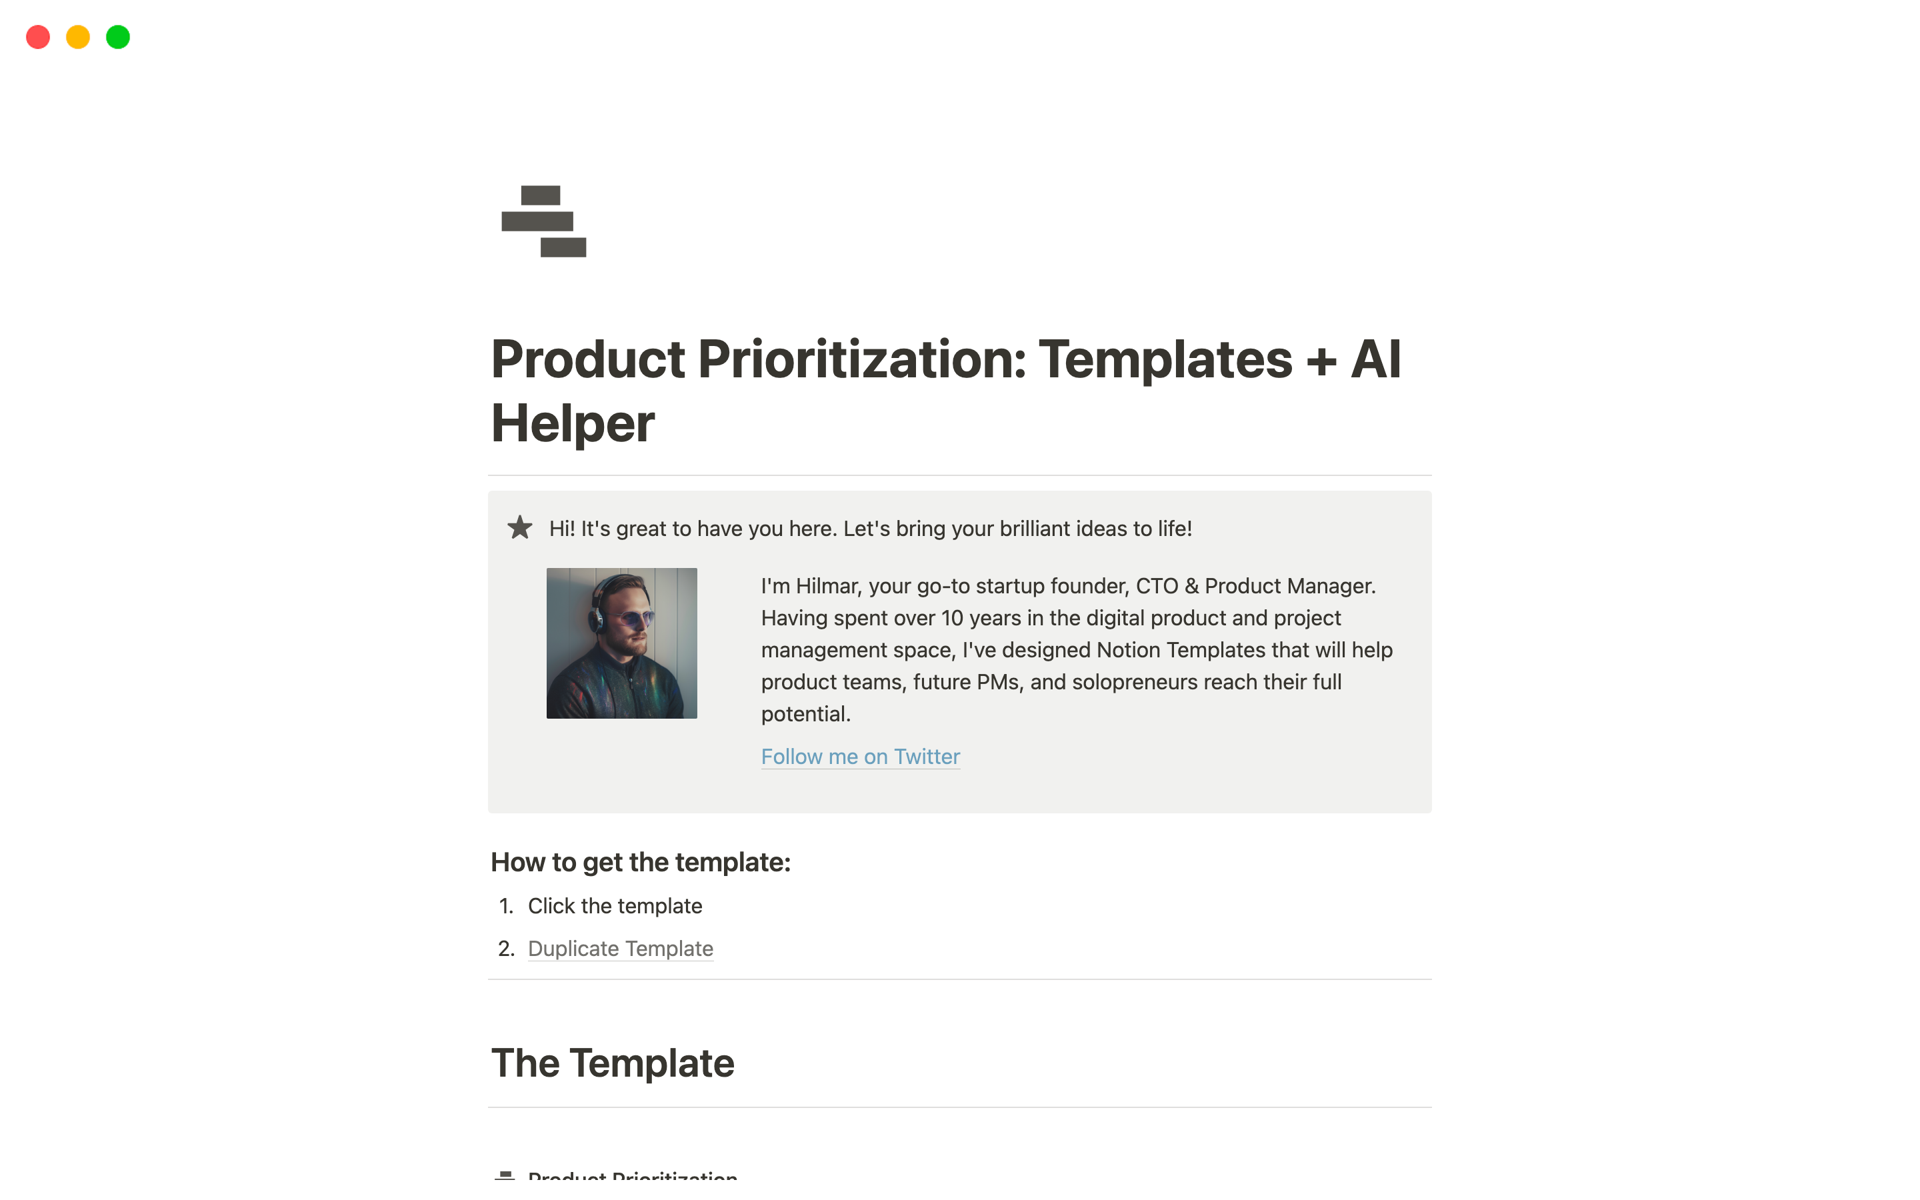 Vista previa de una plantilla para Product Prioritization: Templates + AI Helper